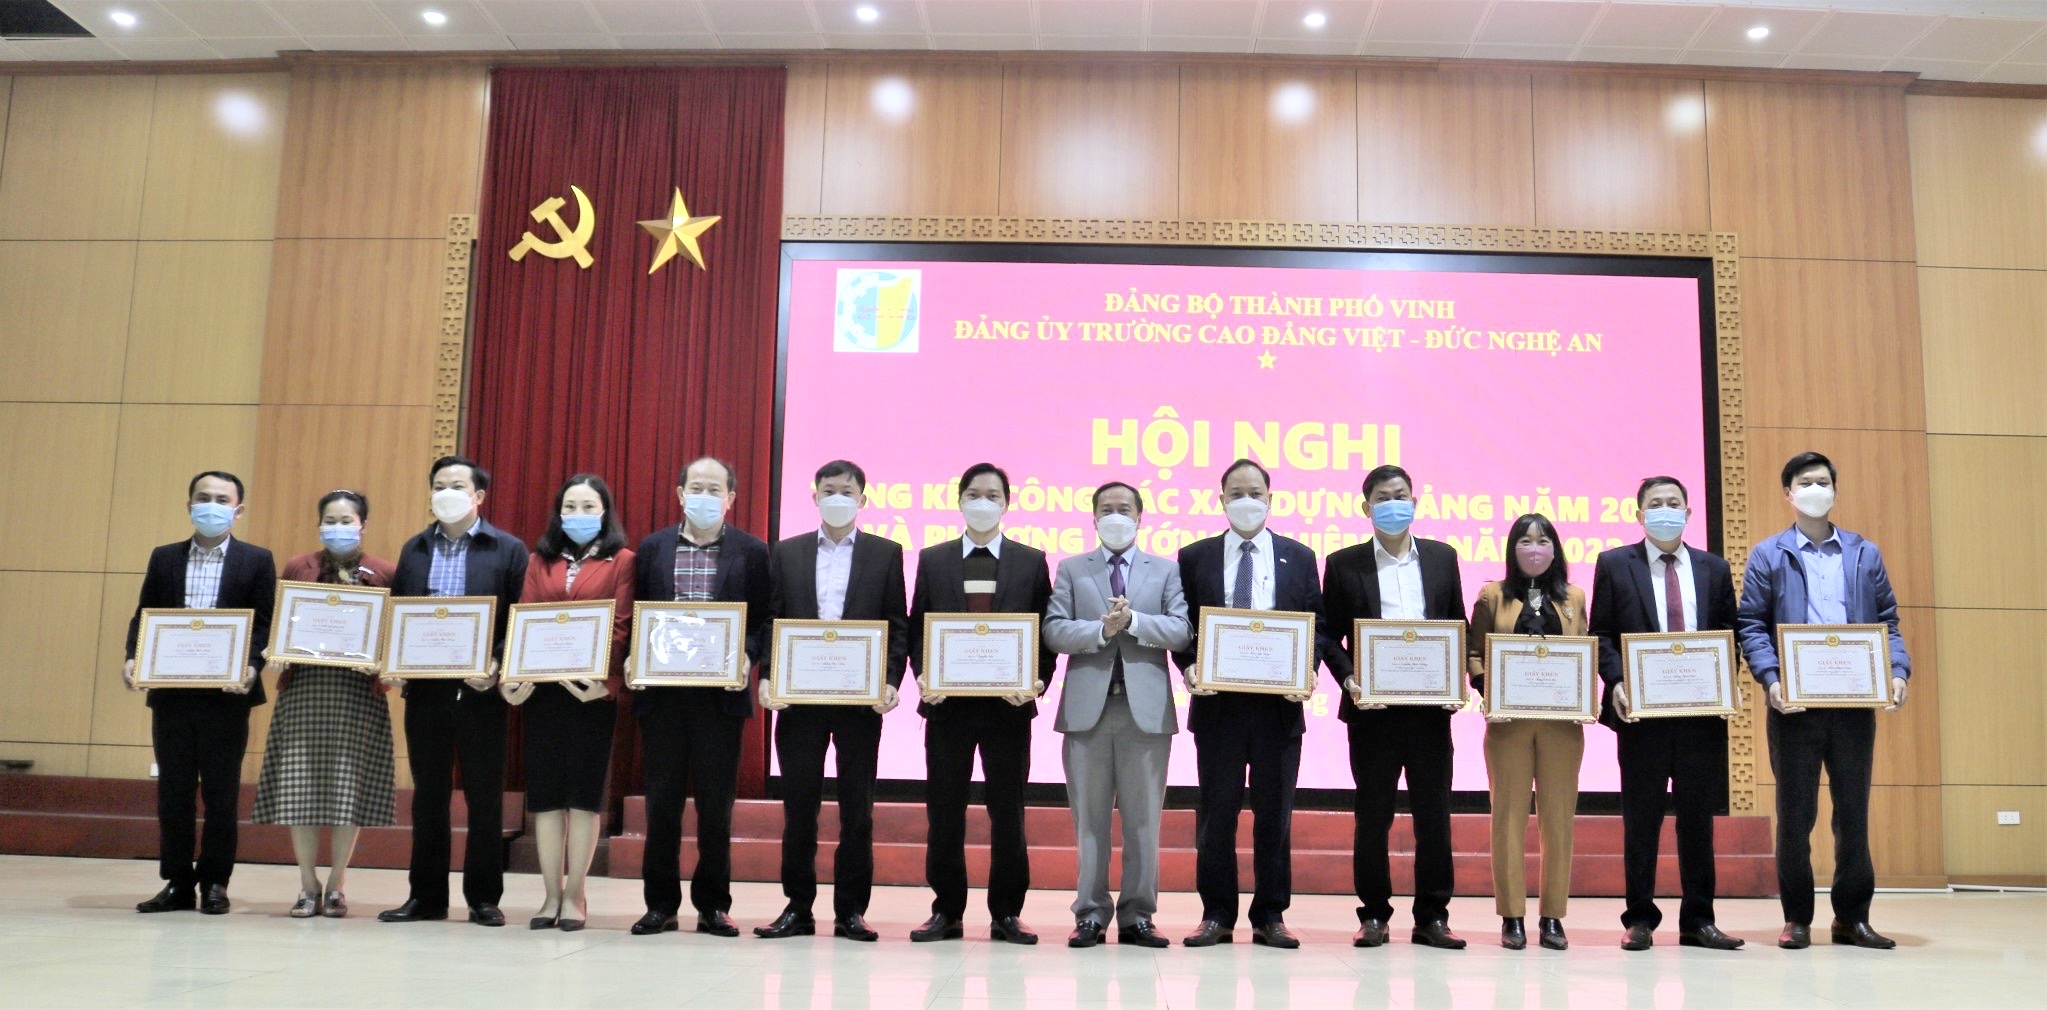 Trường Cao đẳng Việt – Đức Nghệ An tổ chức Hội nghị Tổng kết công tác xây dựng Đảng năm 2021 và triển khai phương hướng nhiệm vụ năm 2022